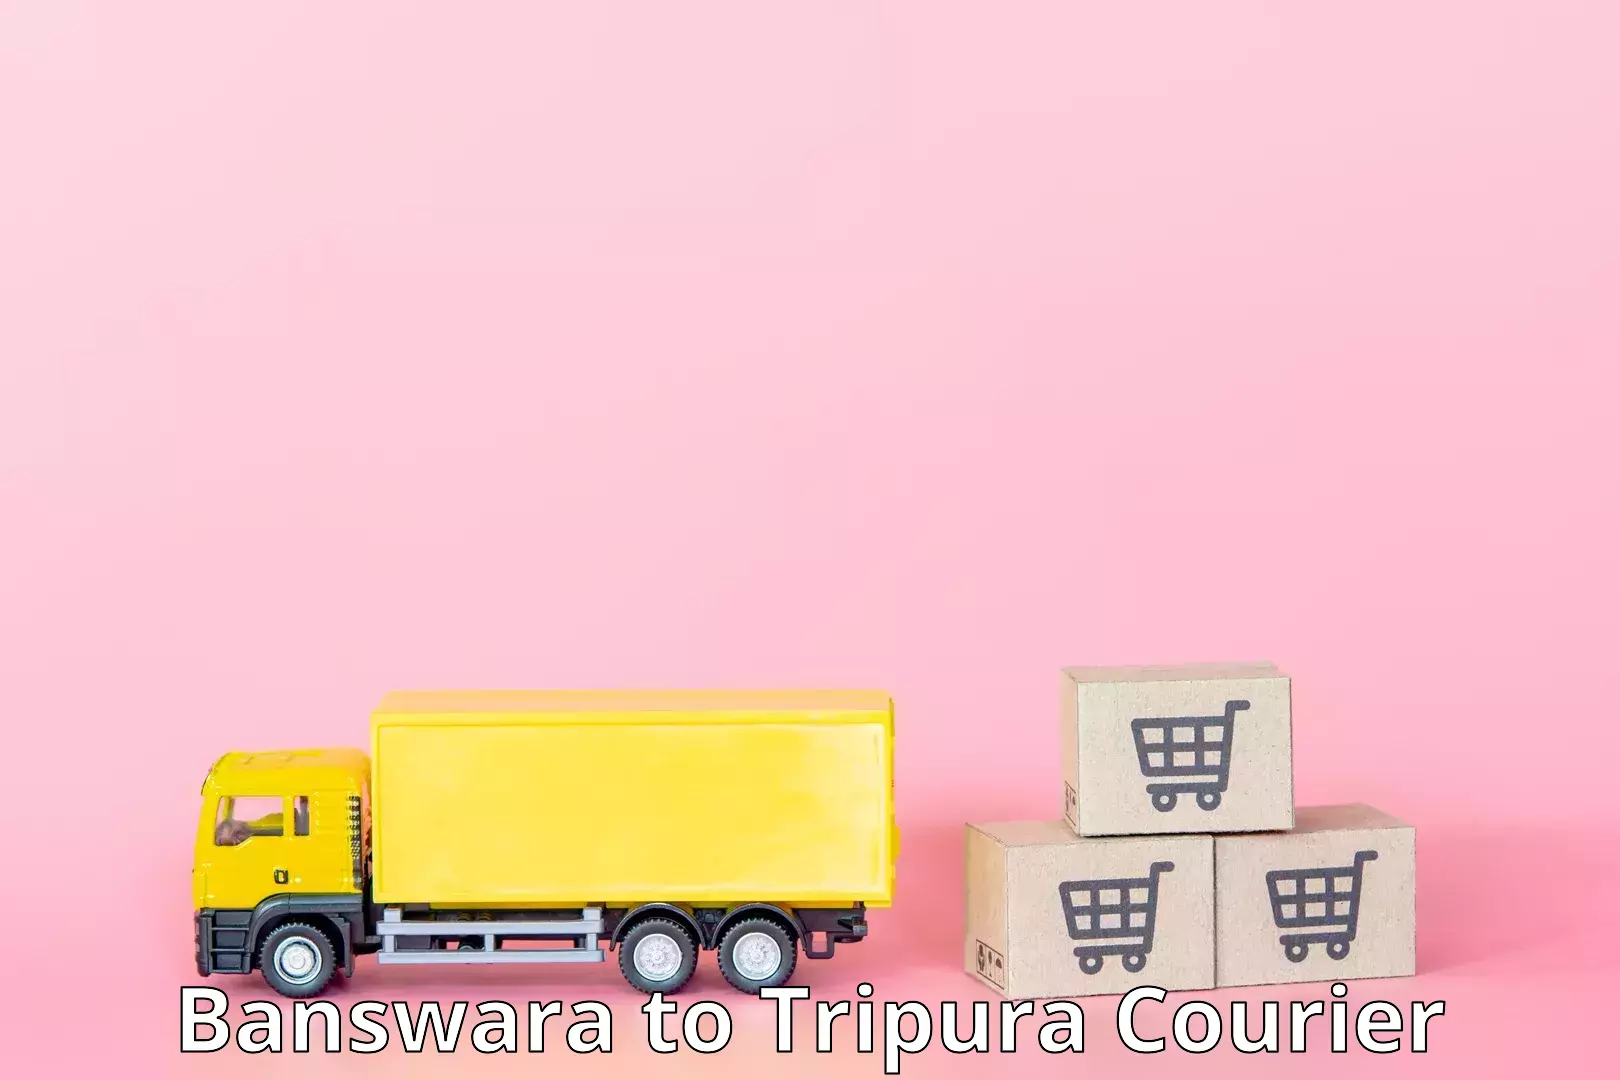 Fast-track shipping solutions Banswara to Khowai